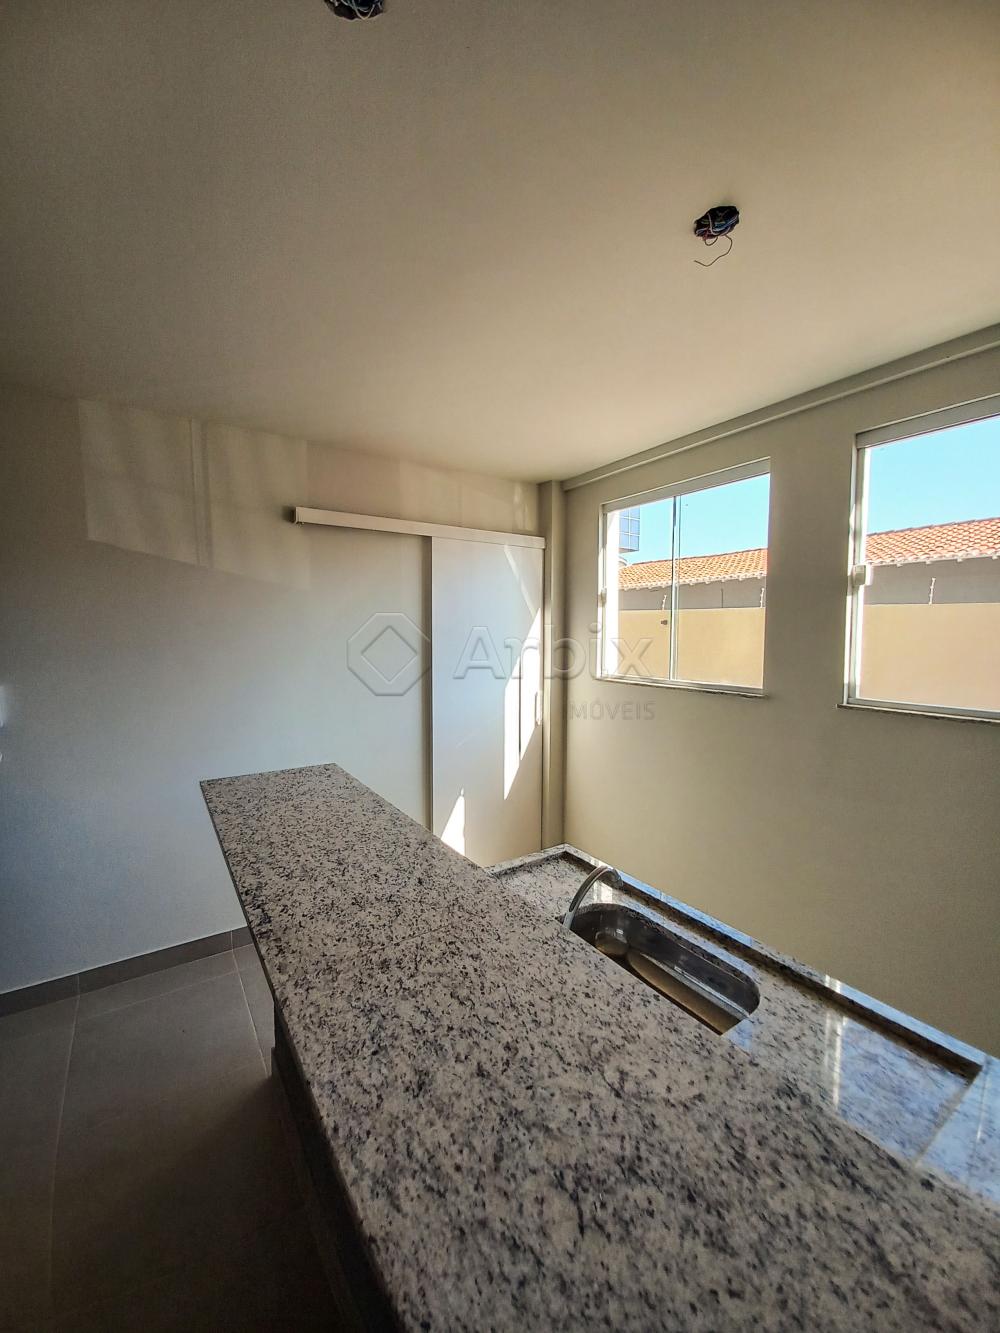 Alugar Apartamento / Loft em Americana R$ 1.400,00 - Foto 5